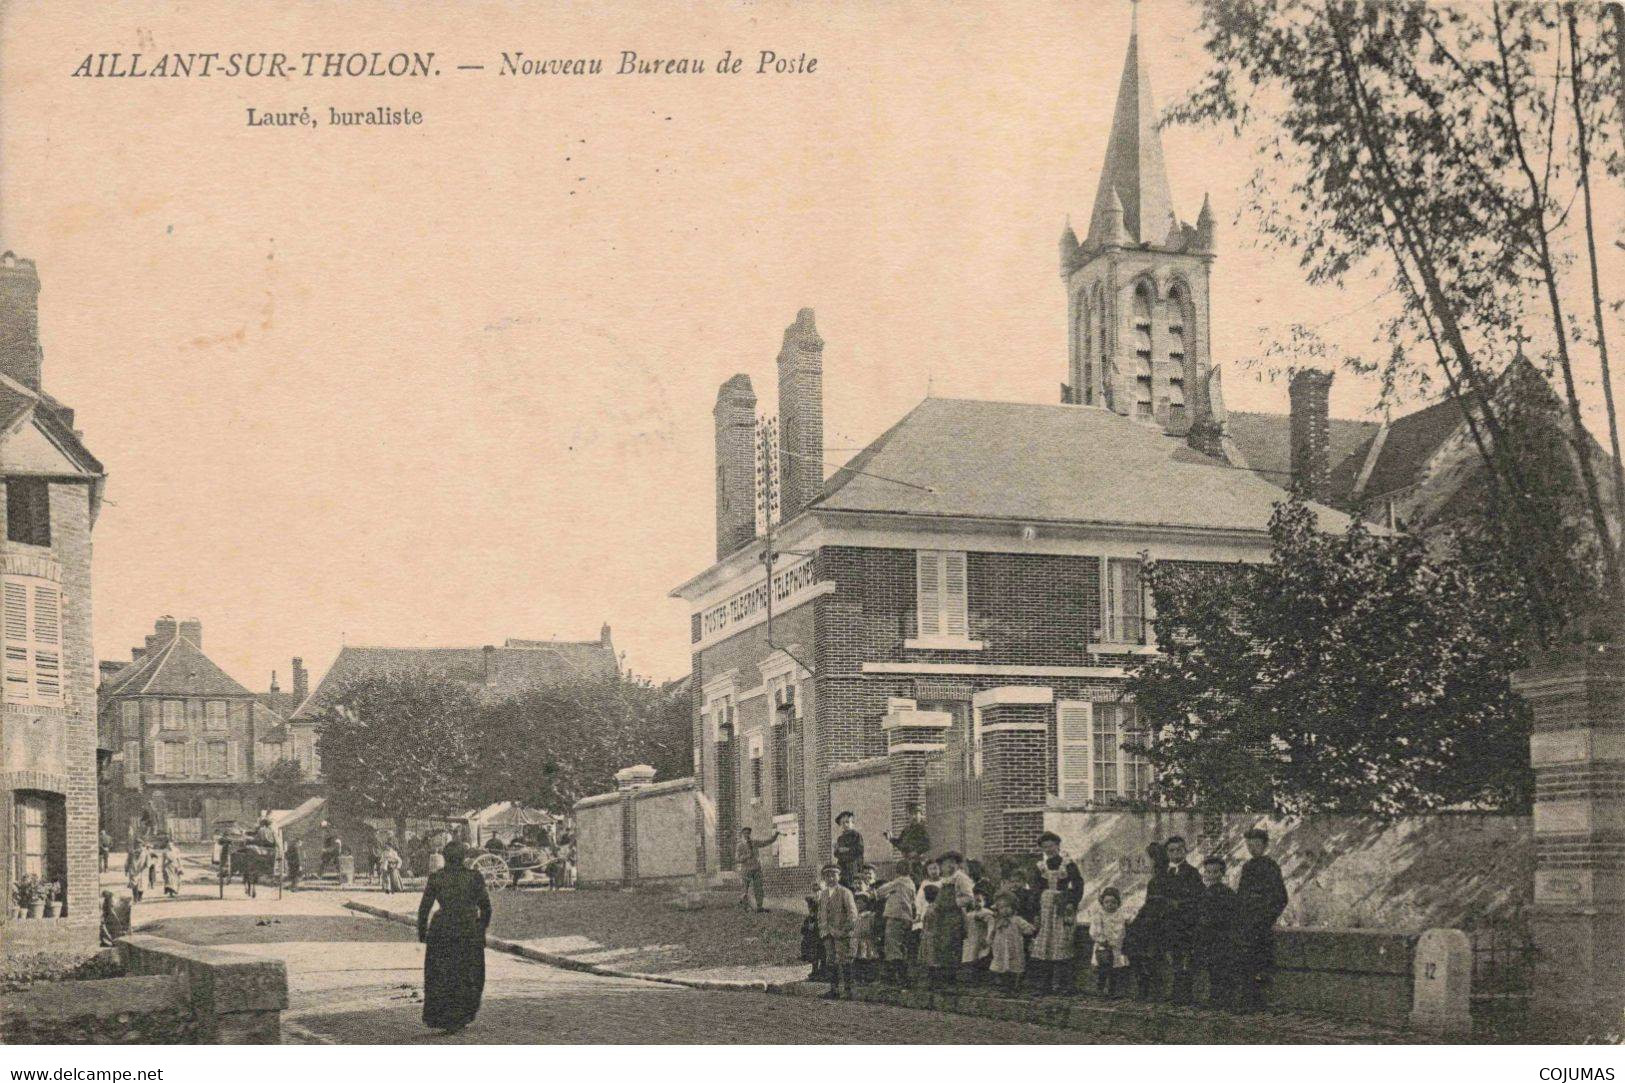 89 - AILLANT SUR THONON - S00464 - Nouveau Bureau De Poste - Lauré Buraliste - Eglise  - L1 - Aillant Sur Tholon